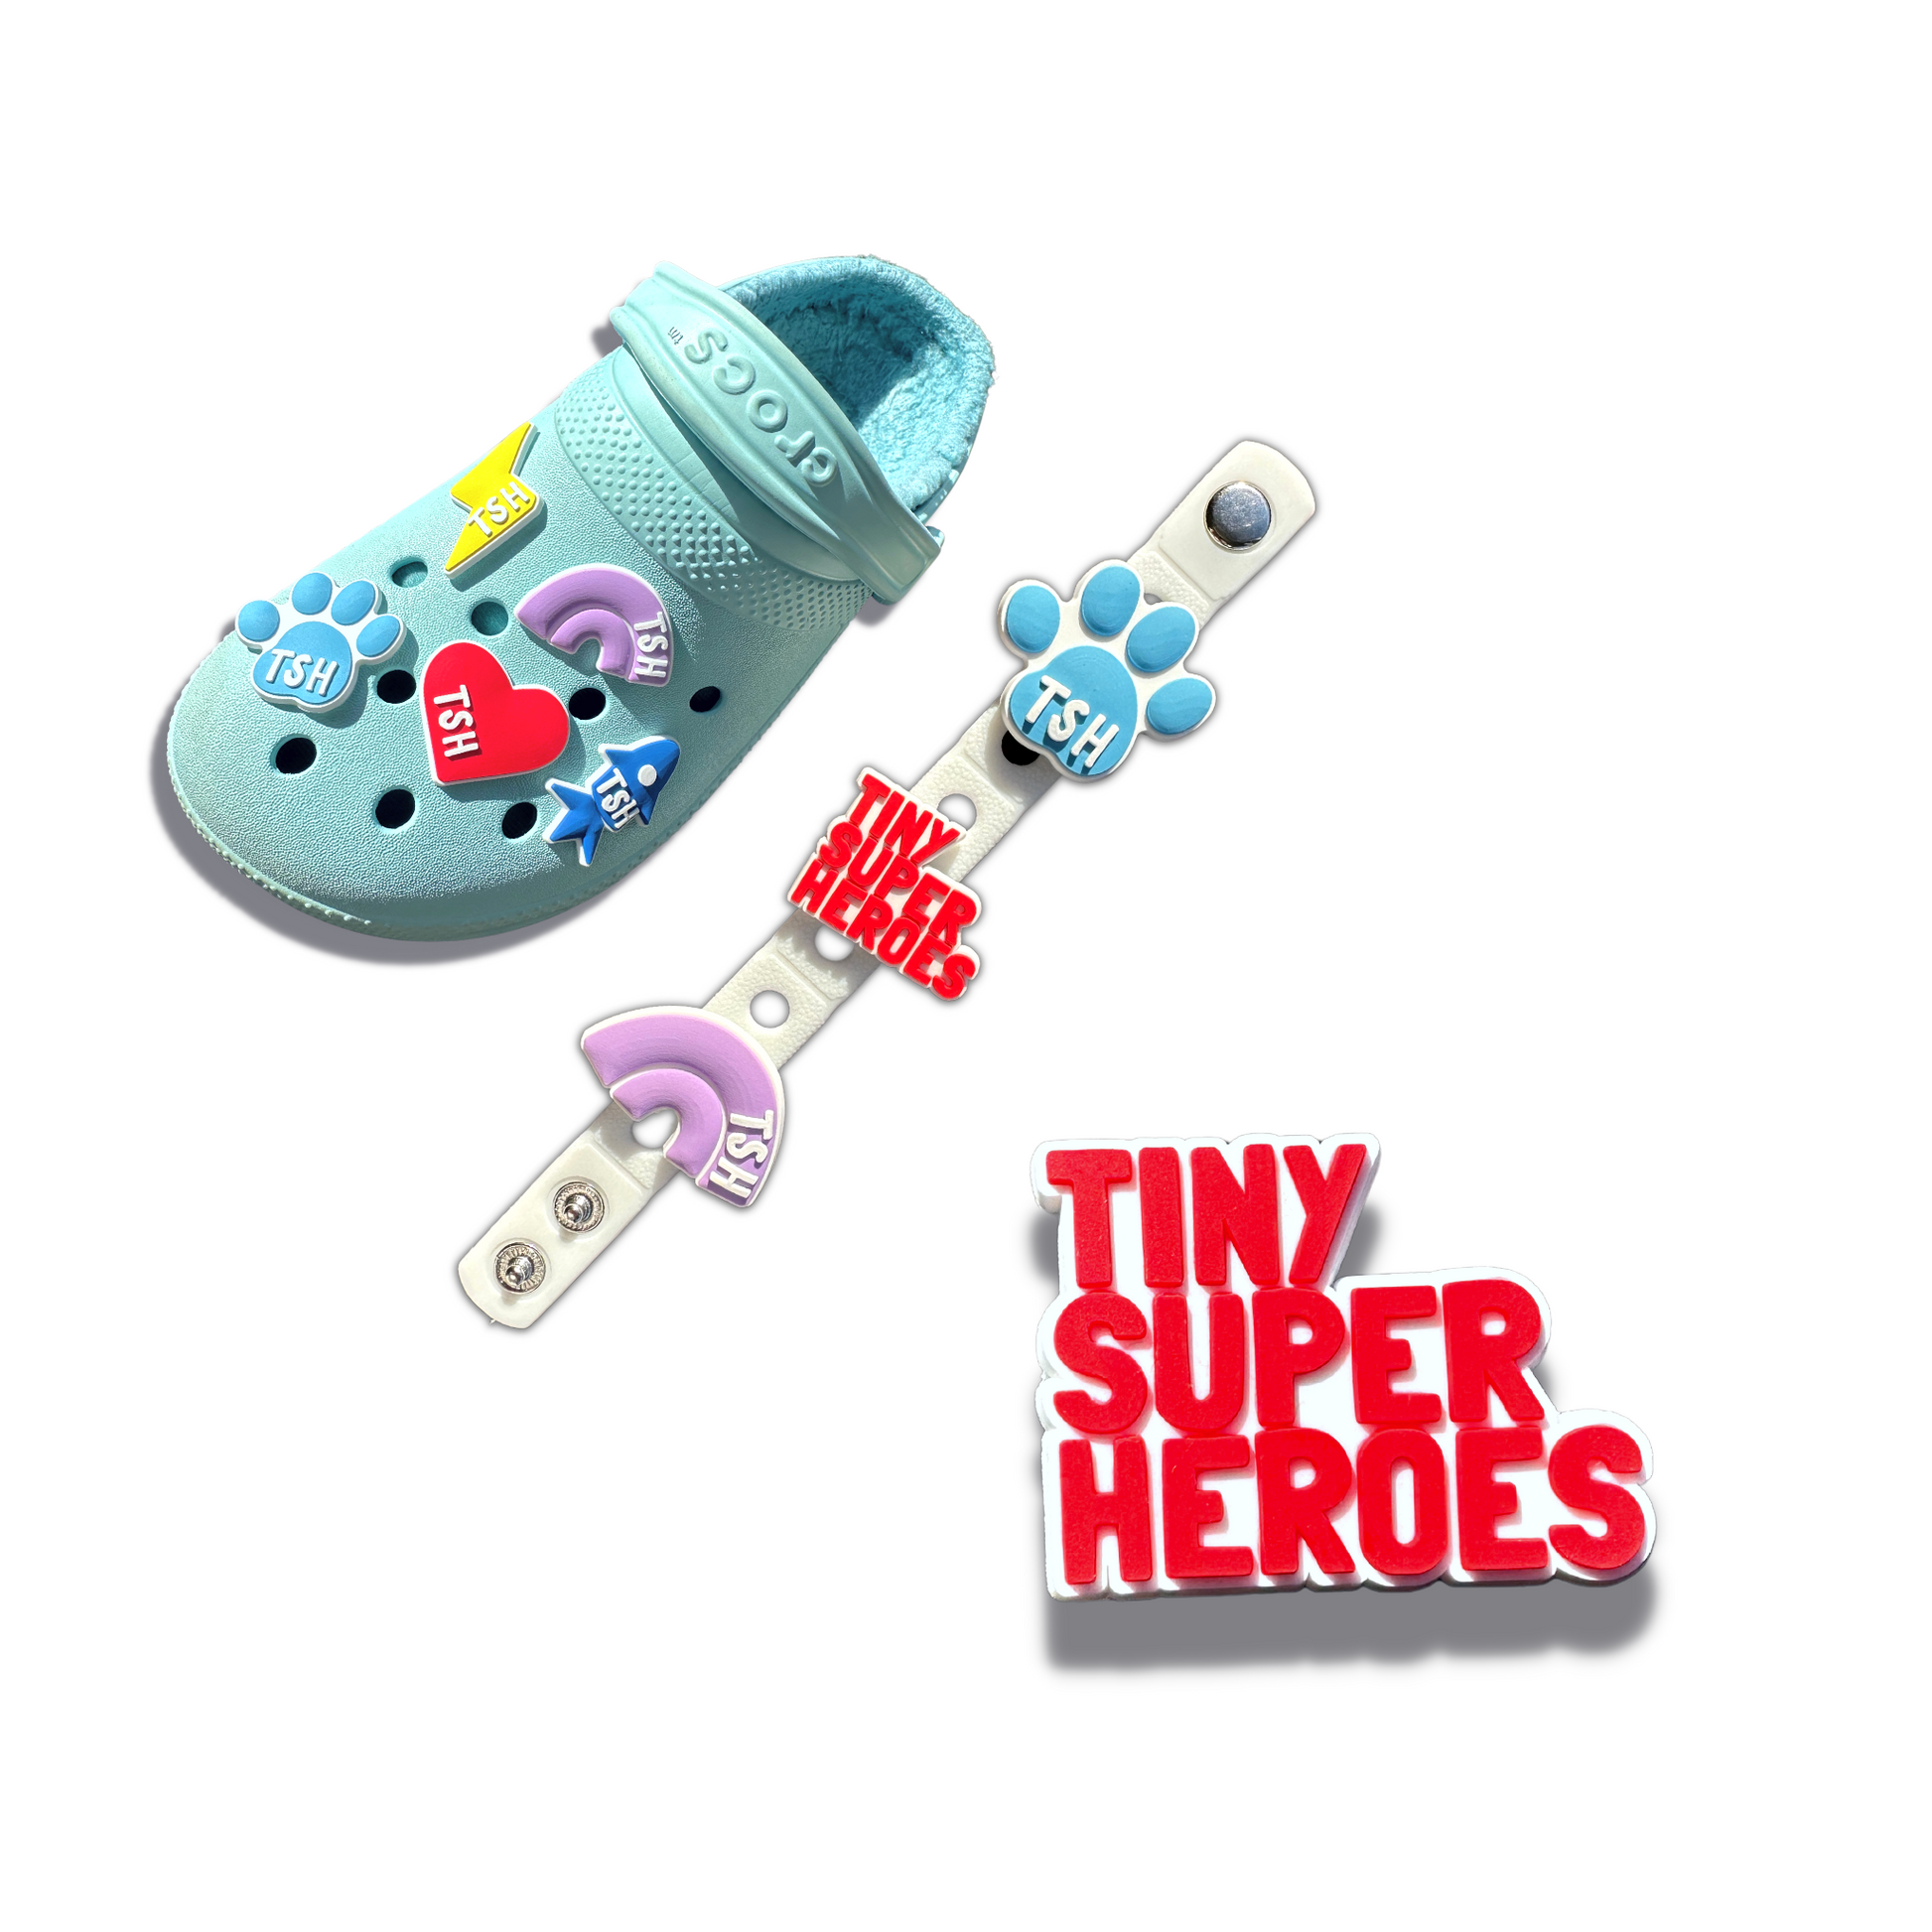 TSH Charms - TinySuperheroes